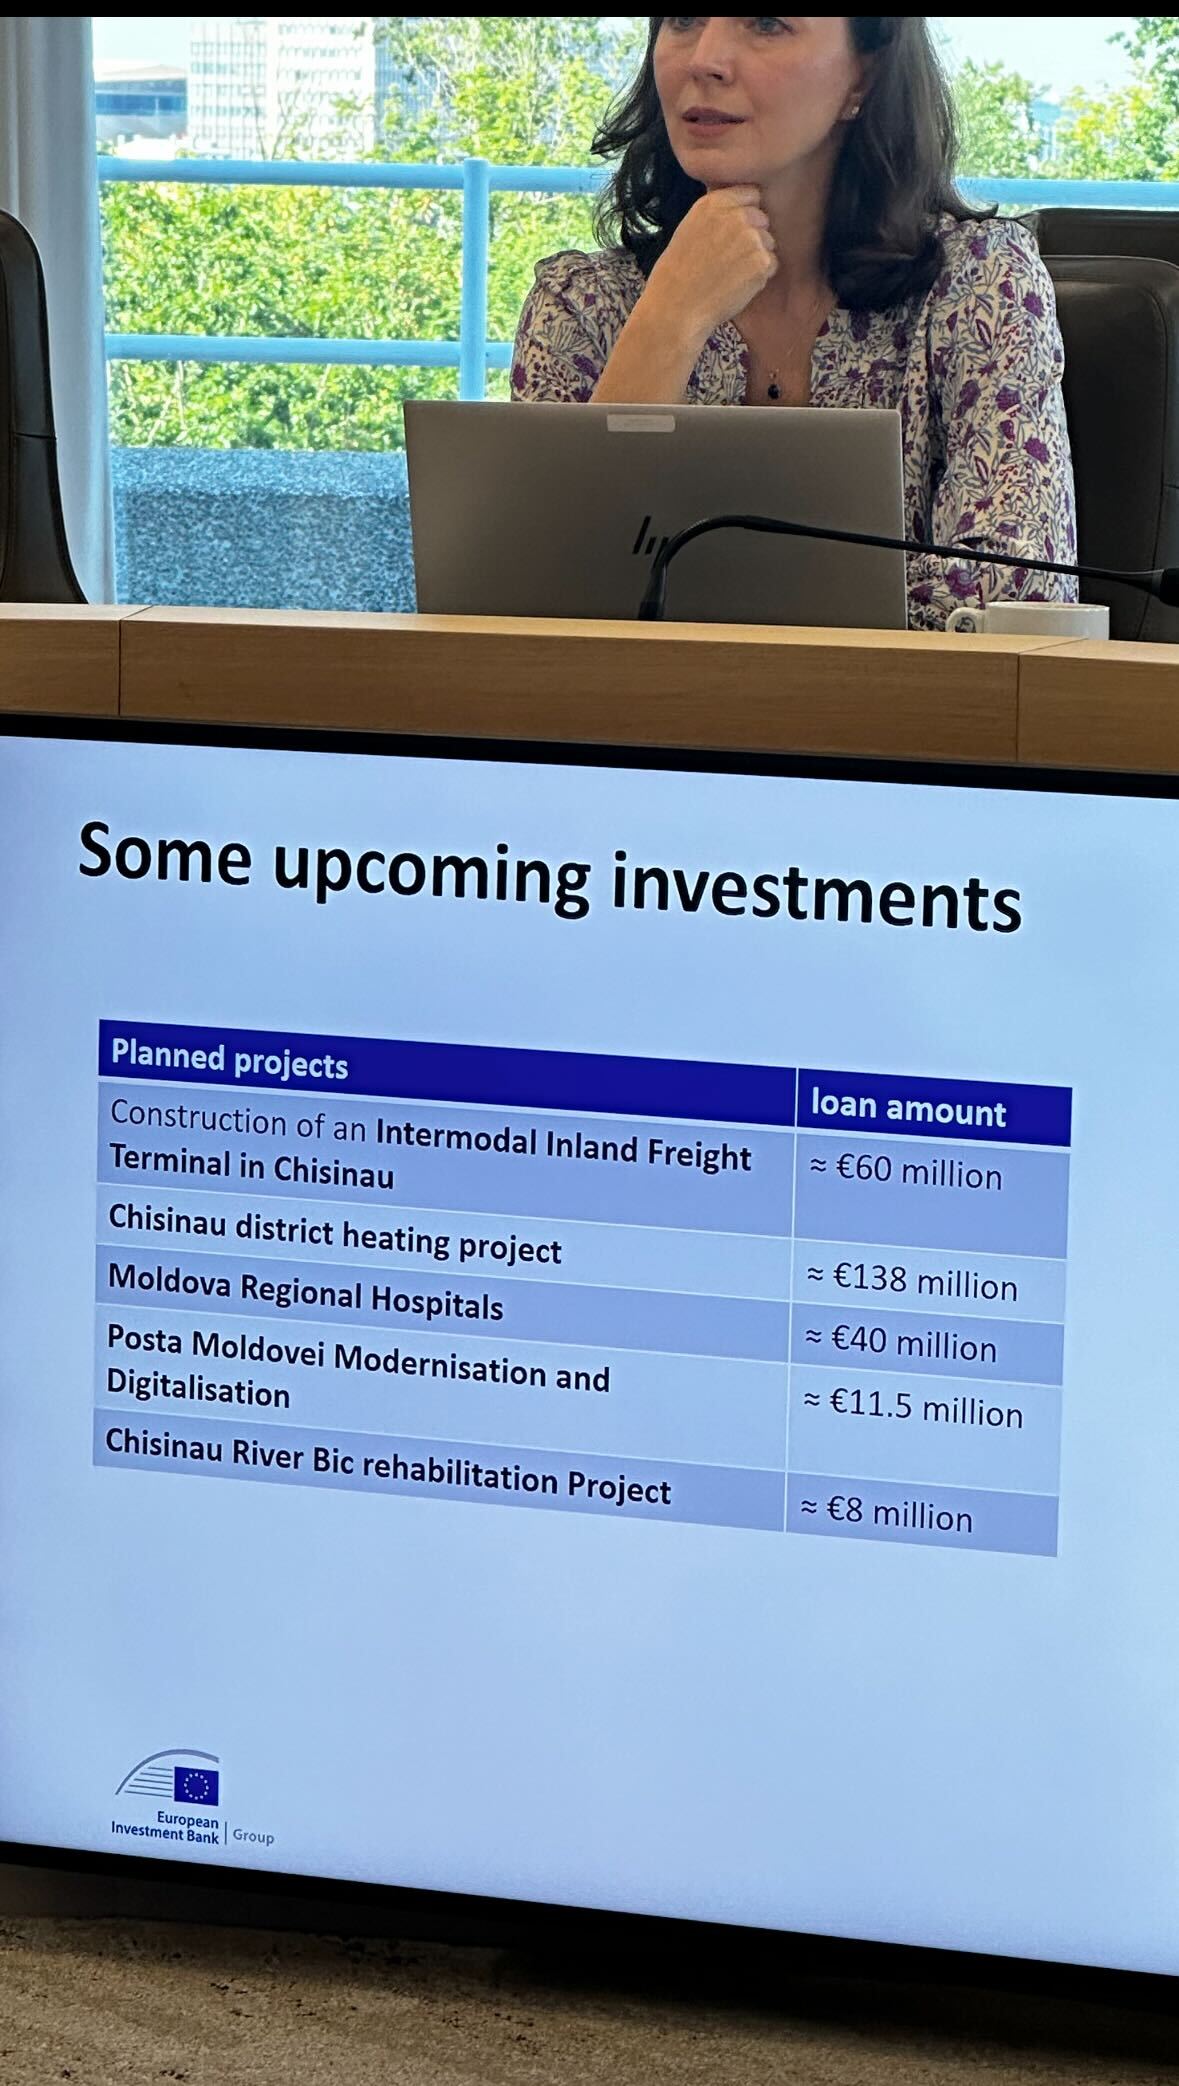 Европейский инвестиционный банк планирует предоставить Молдове в кредит более €257 млн на реализацию пяти проектов